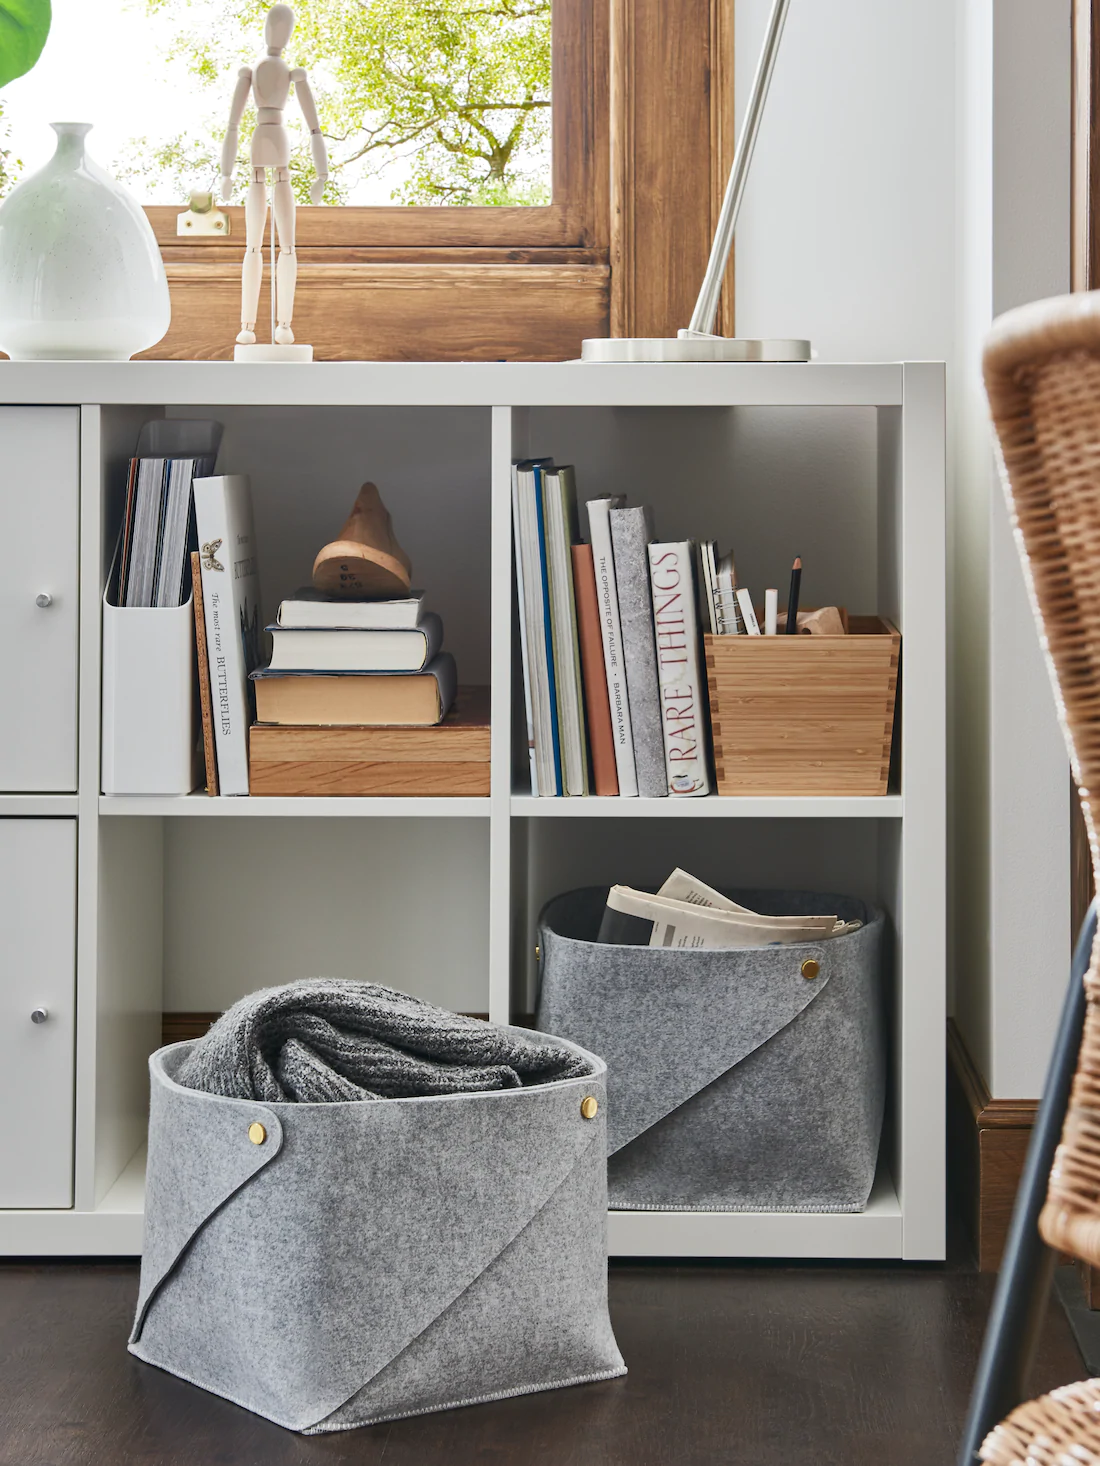 Ý tưởng lưu trữ bằng giỏ không chỉ gọn nhẹ, linh hoạt mà còn mang lại vẻ đẹp thẩm mỹ cho không gian phòng khách.